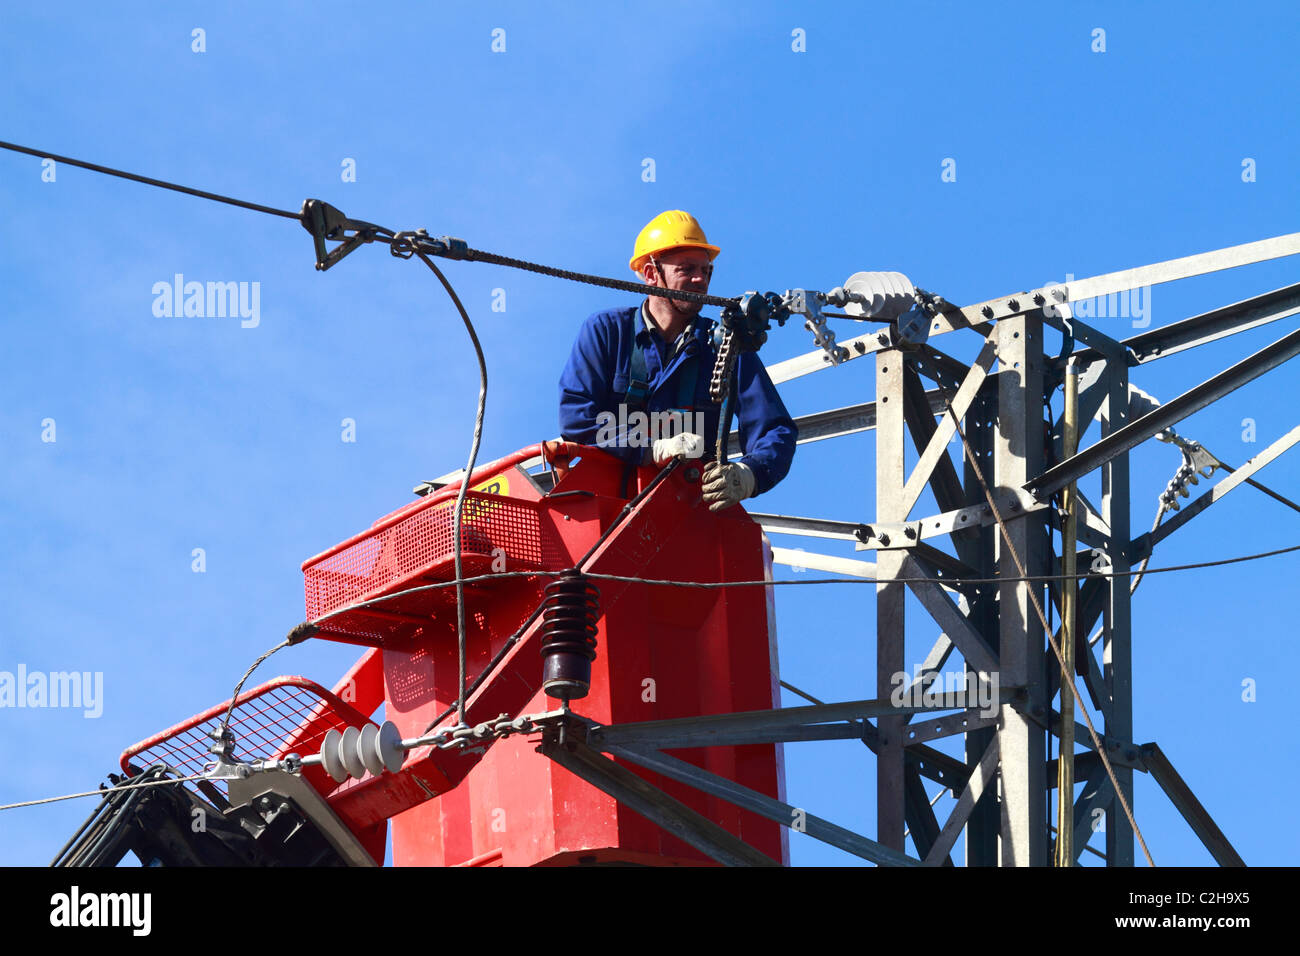 Electrician working on haut d'un pylône Banque D'Images